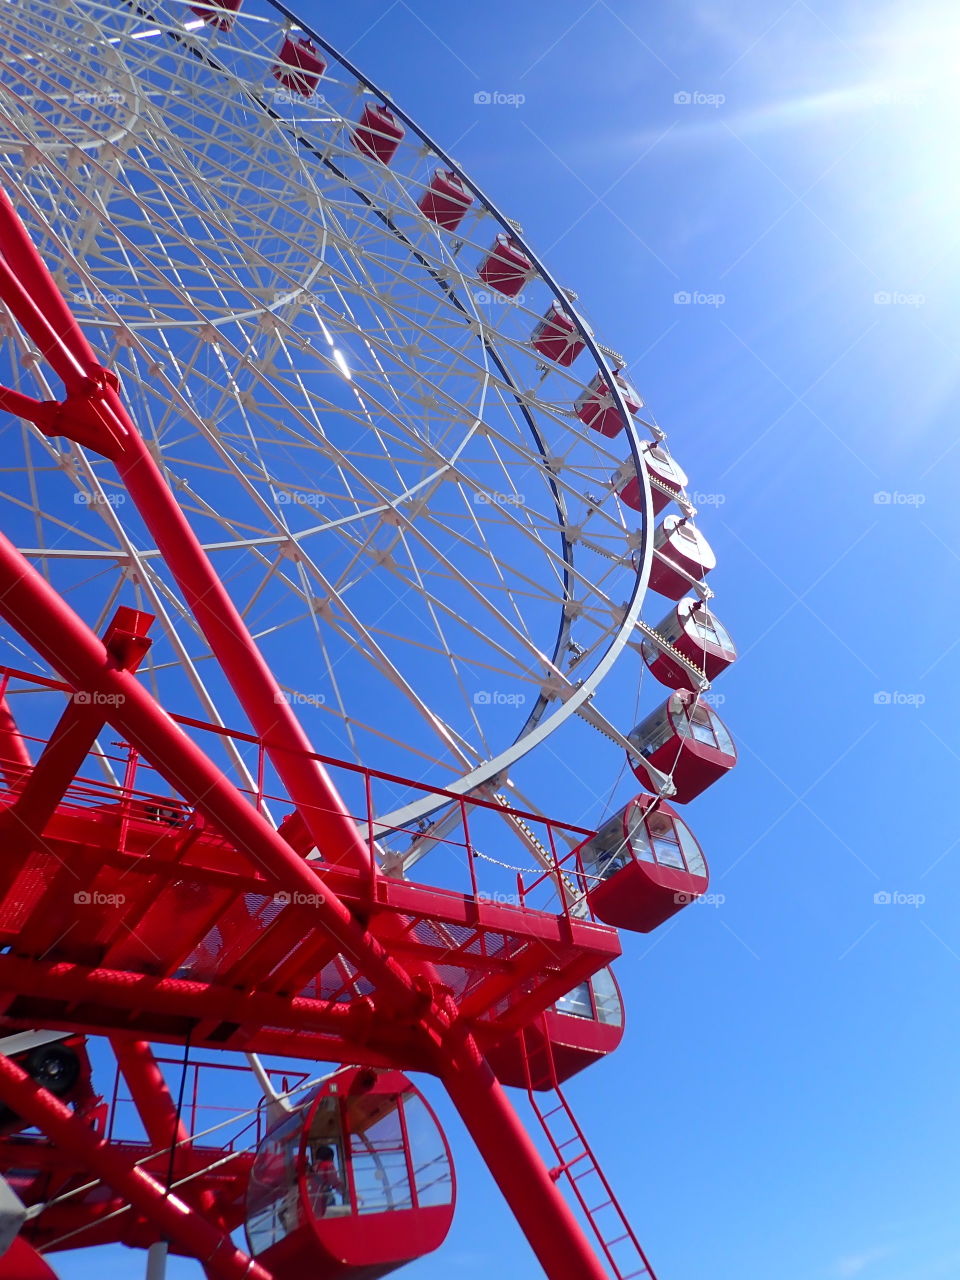 Red Ferris wheel